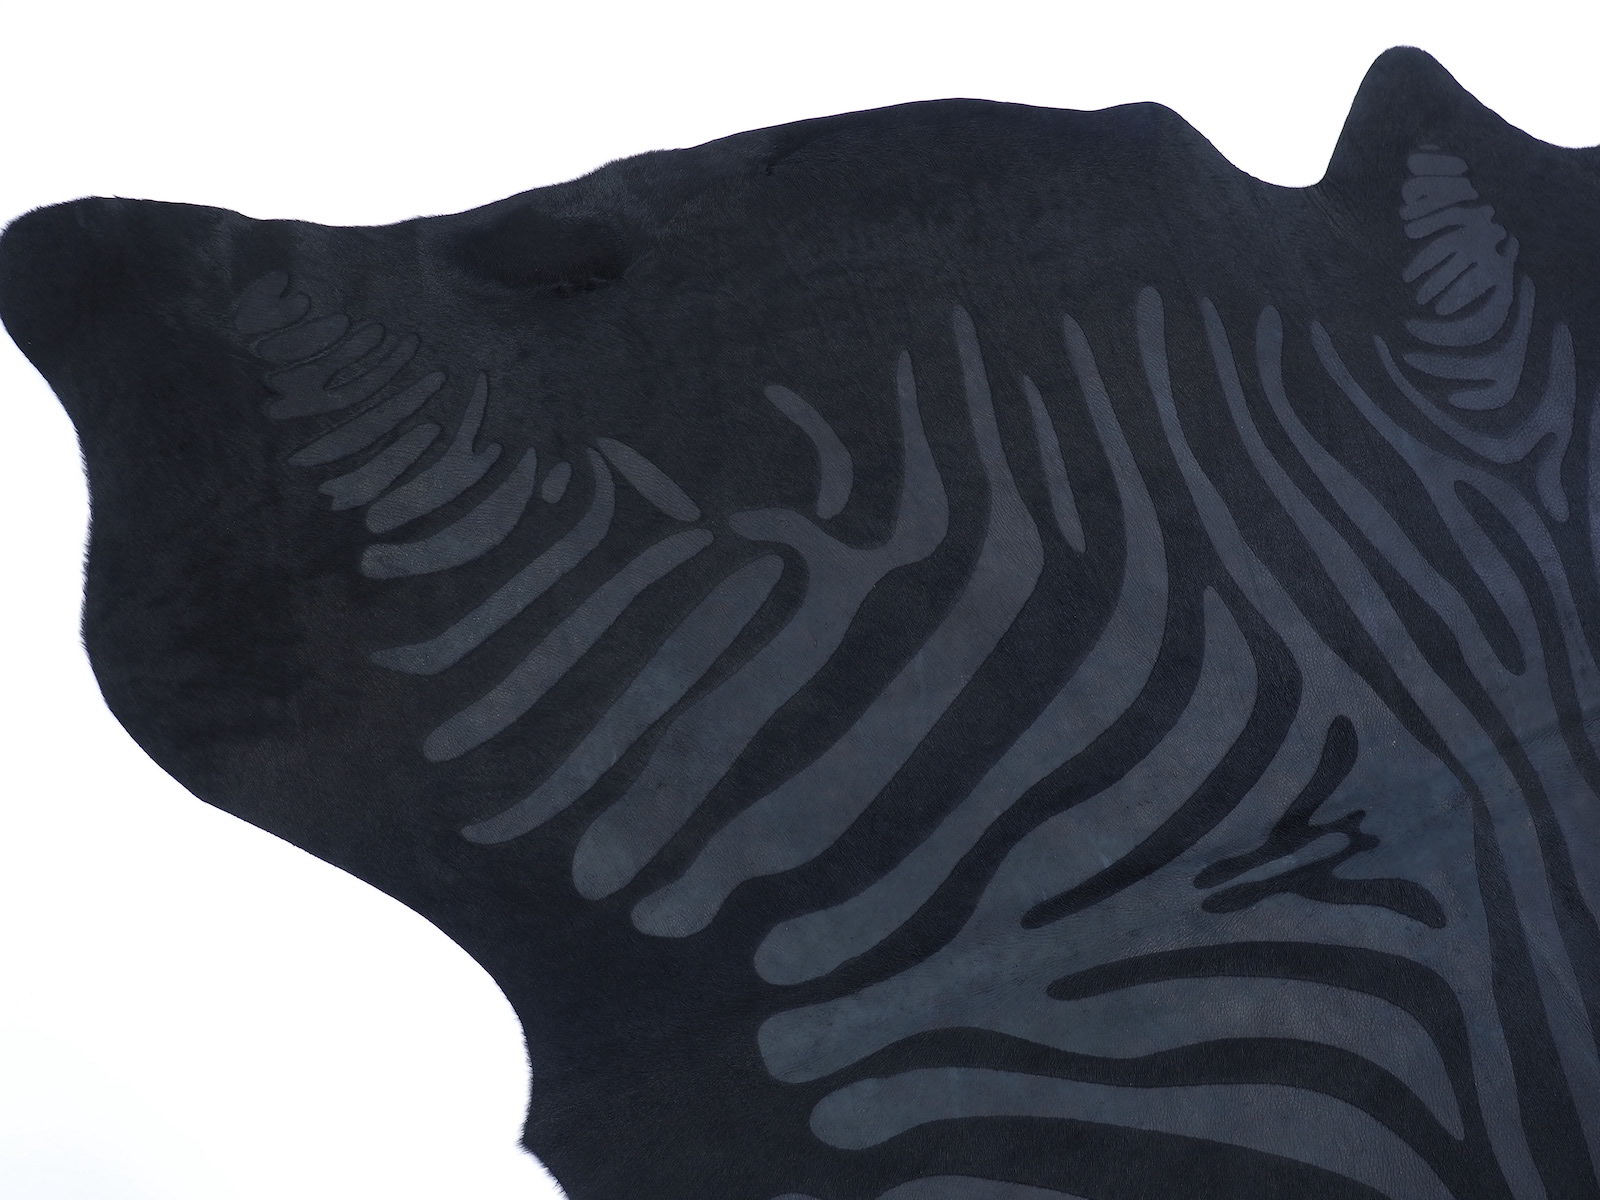  Шкура коровы под Зебру черная на черном арт.: 29036